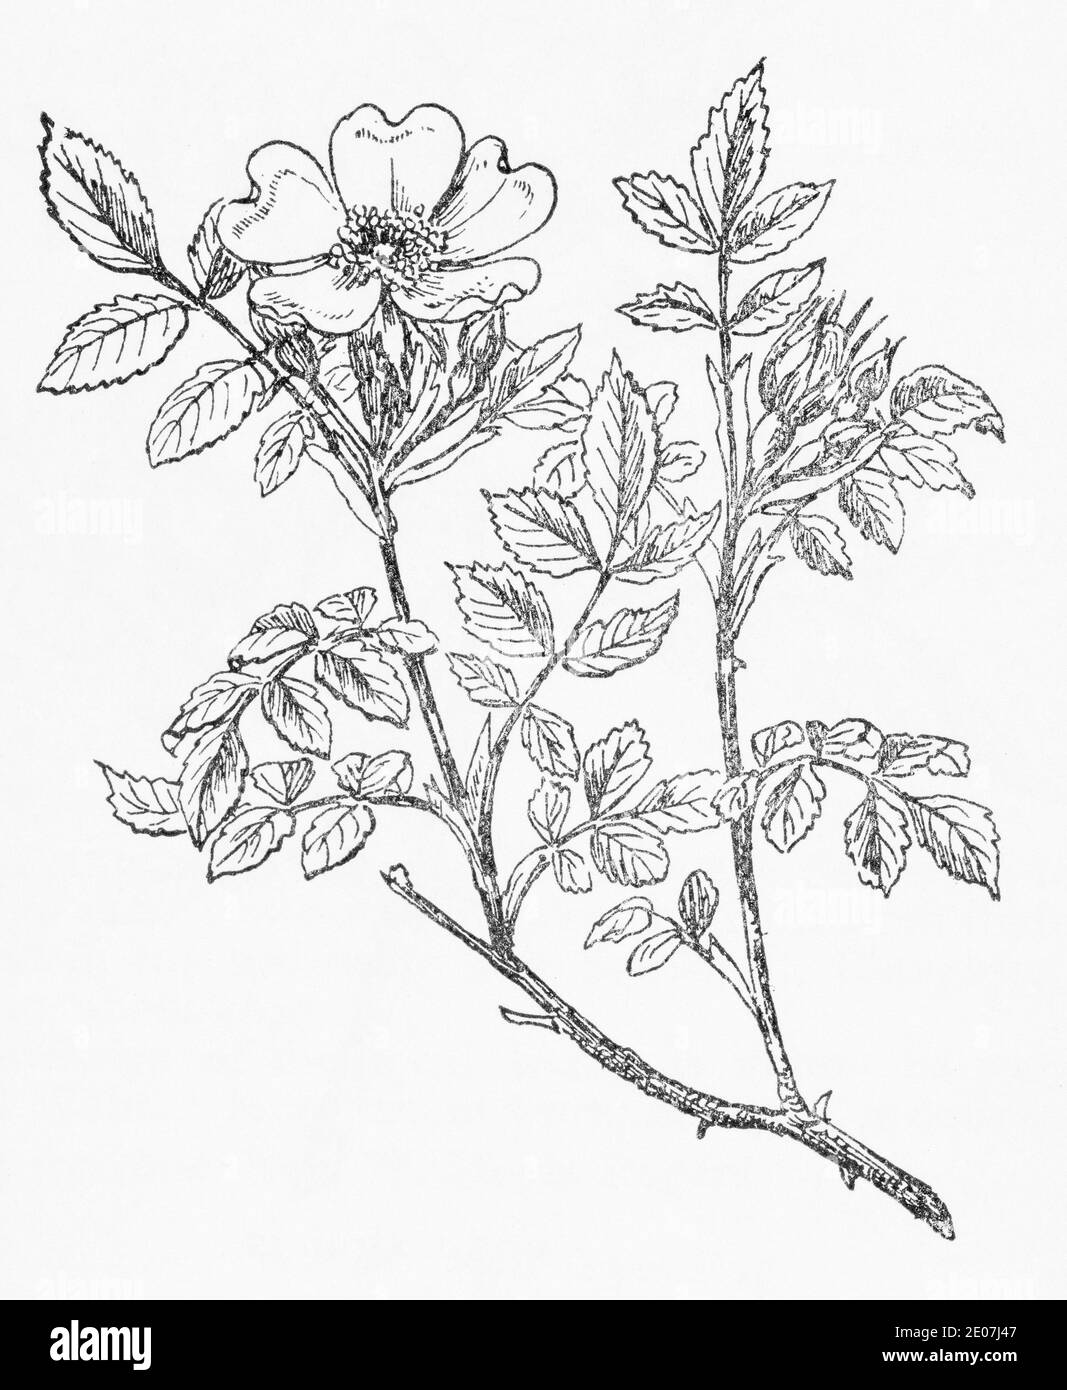 Antica illustrazione botanica incisione di cane Rosa / Rosa canina. Pianta di erbe medicinali tradizionali. Vedere Note Foto Stock